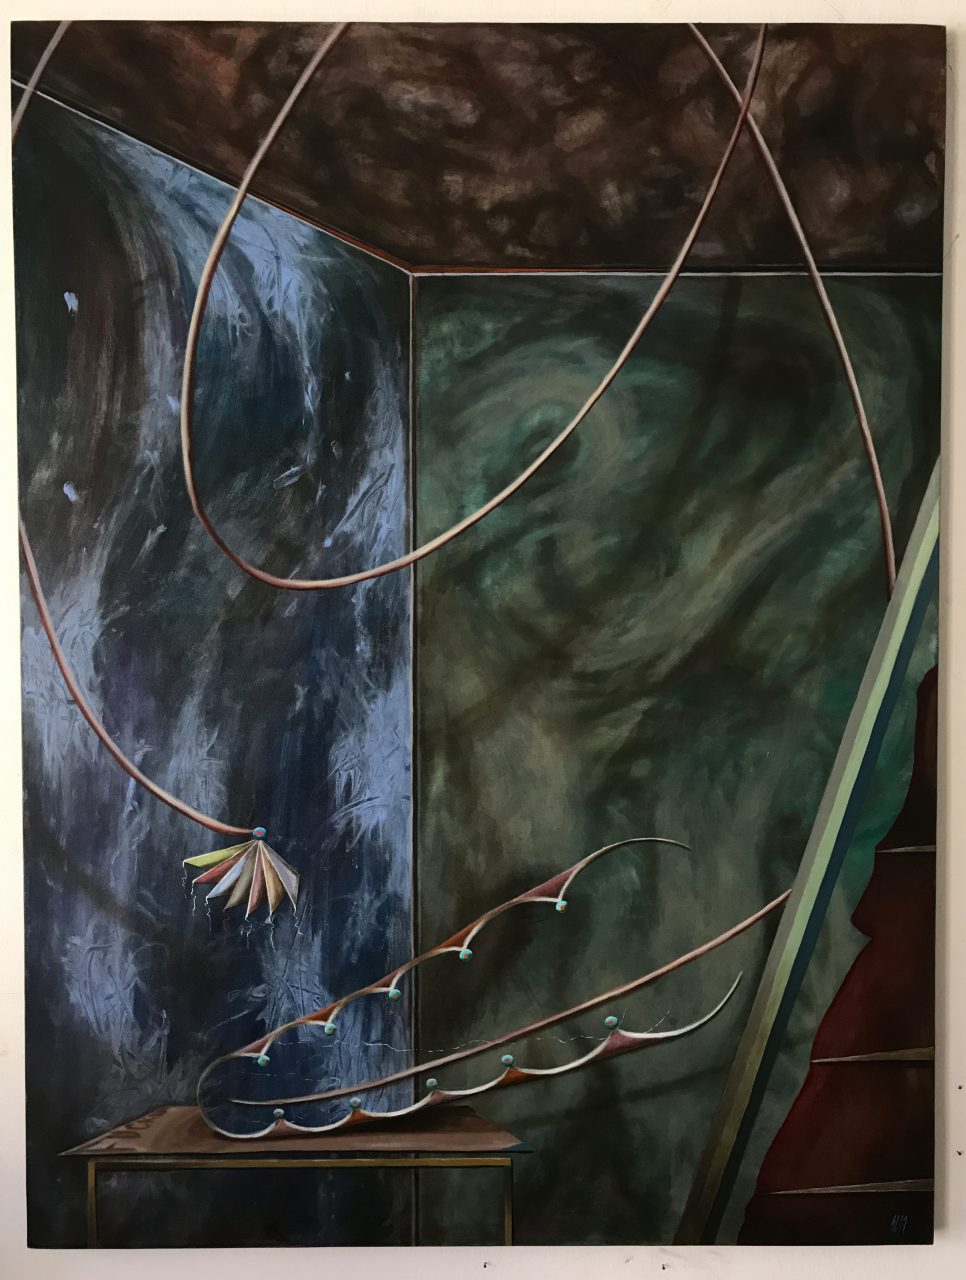 under the midnight sun, 105 x 140cm, oil on nettle, 2017